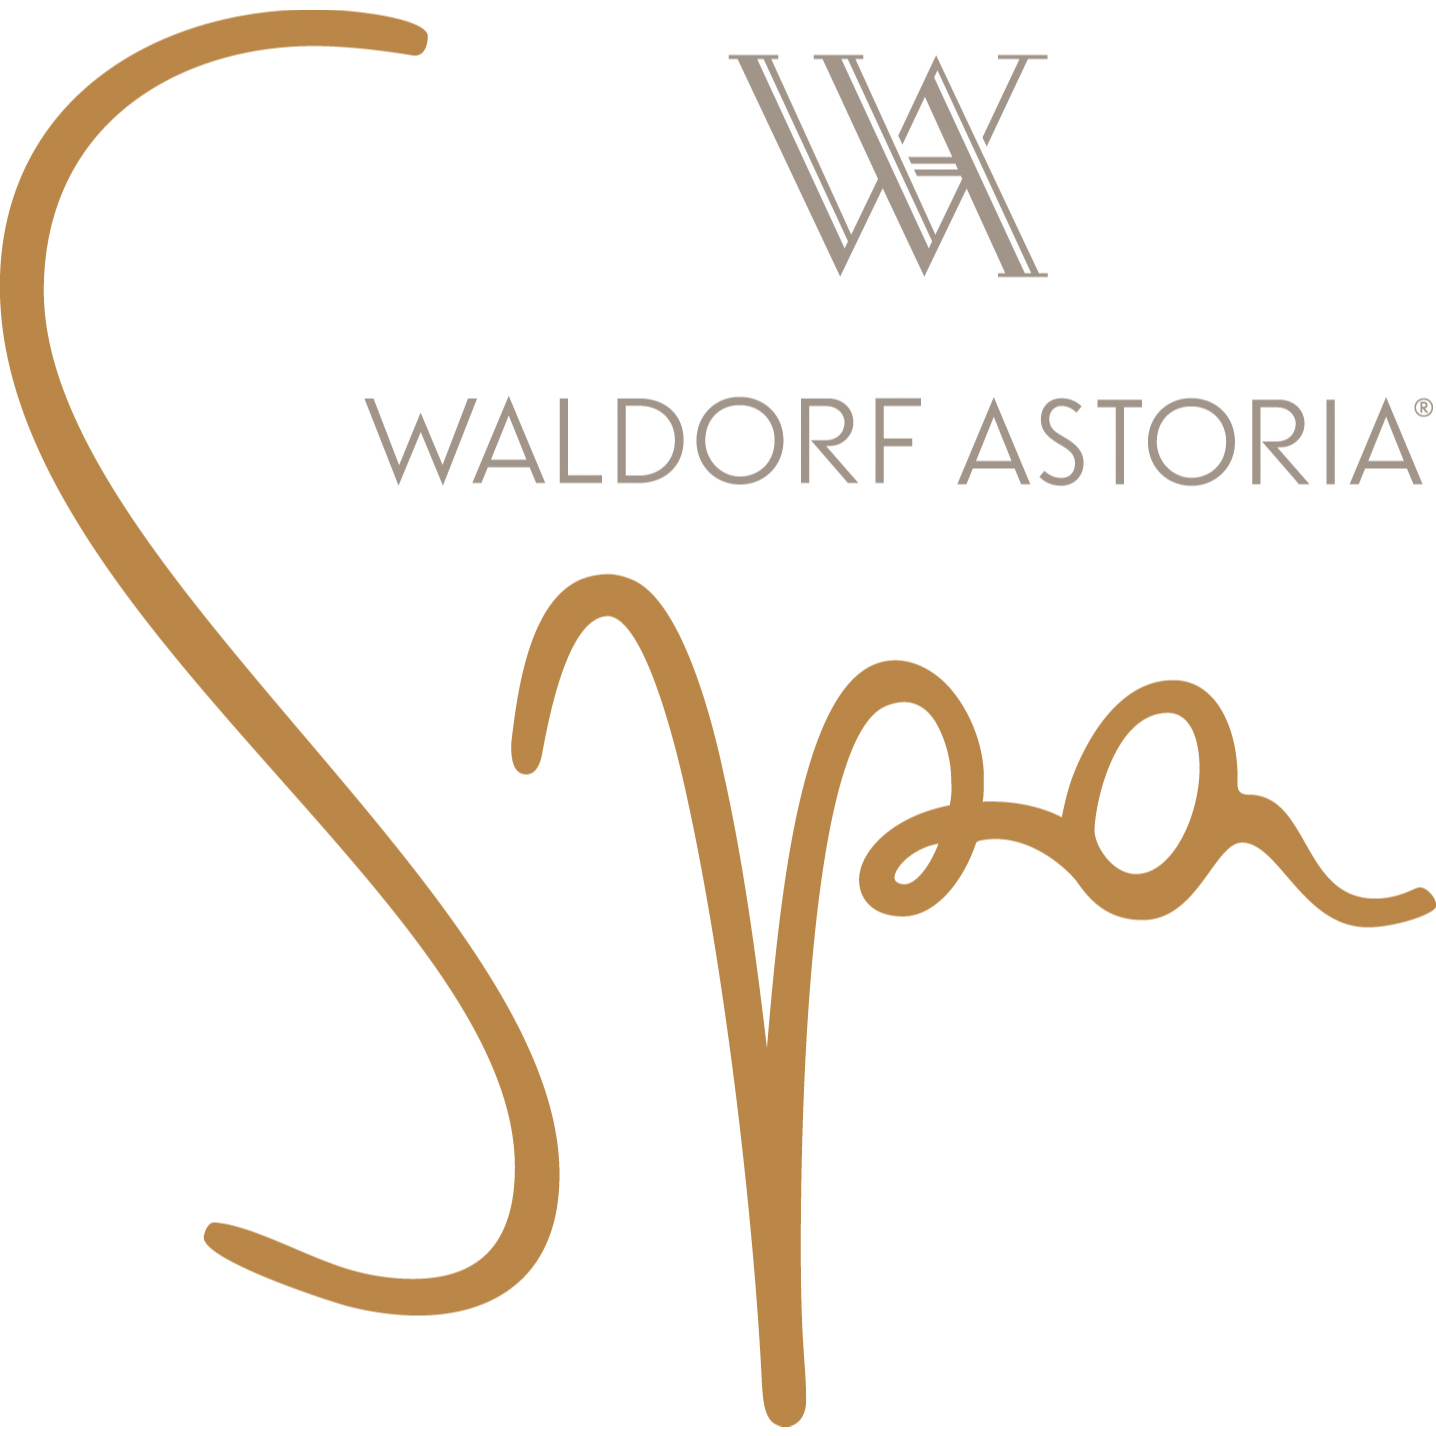 Waldorf Astoria Spa Orlando - Orlando, FL 32821 - (407)597-5360 | ShowMeLocal.com